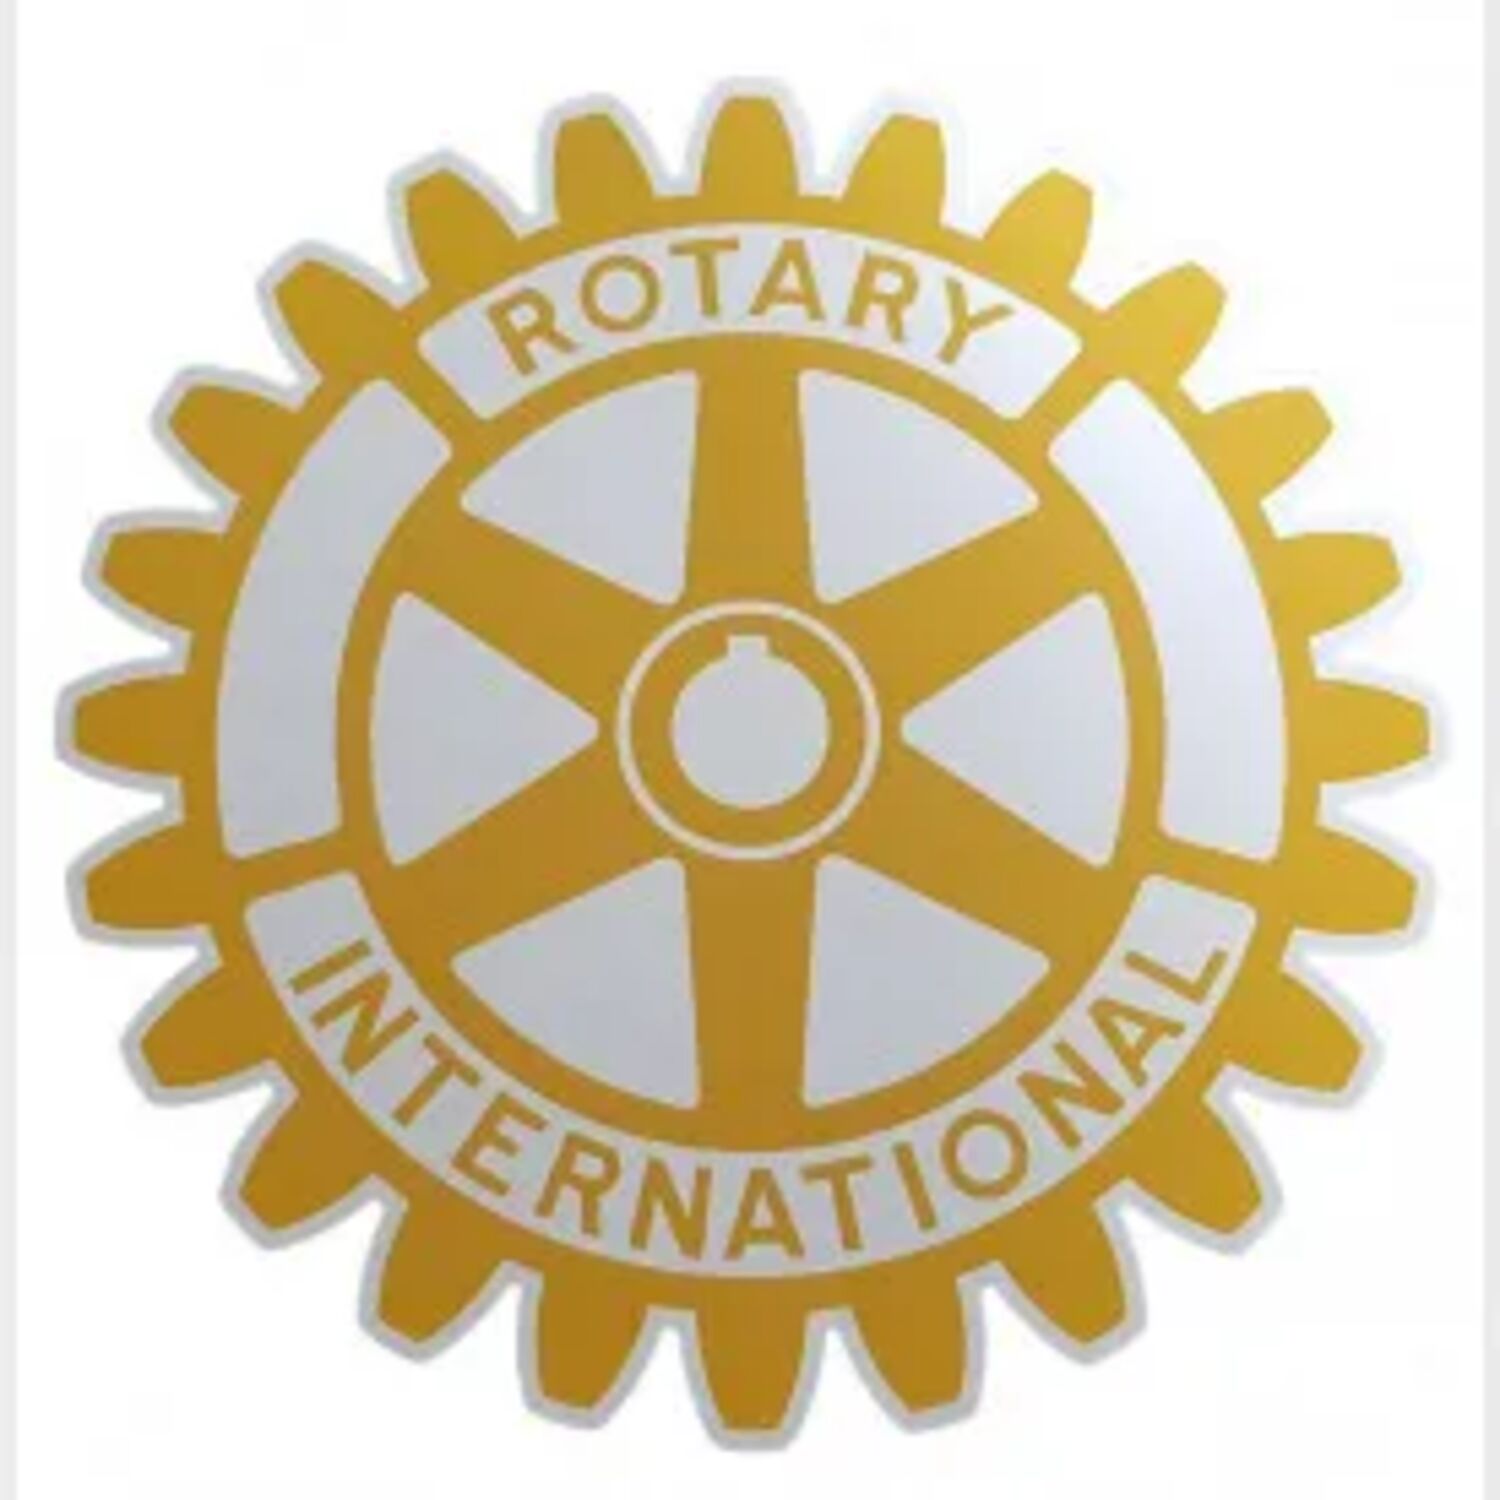 On s'entend bien - le Rotary Club de Saverne